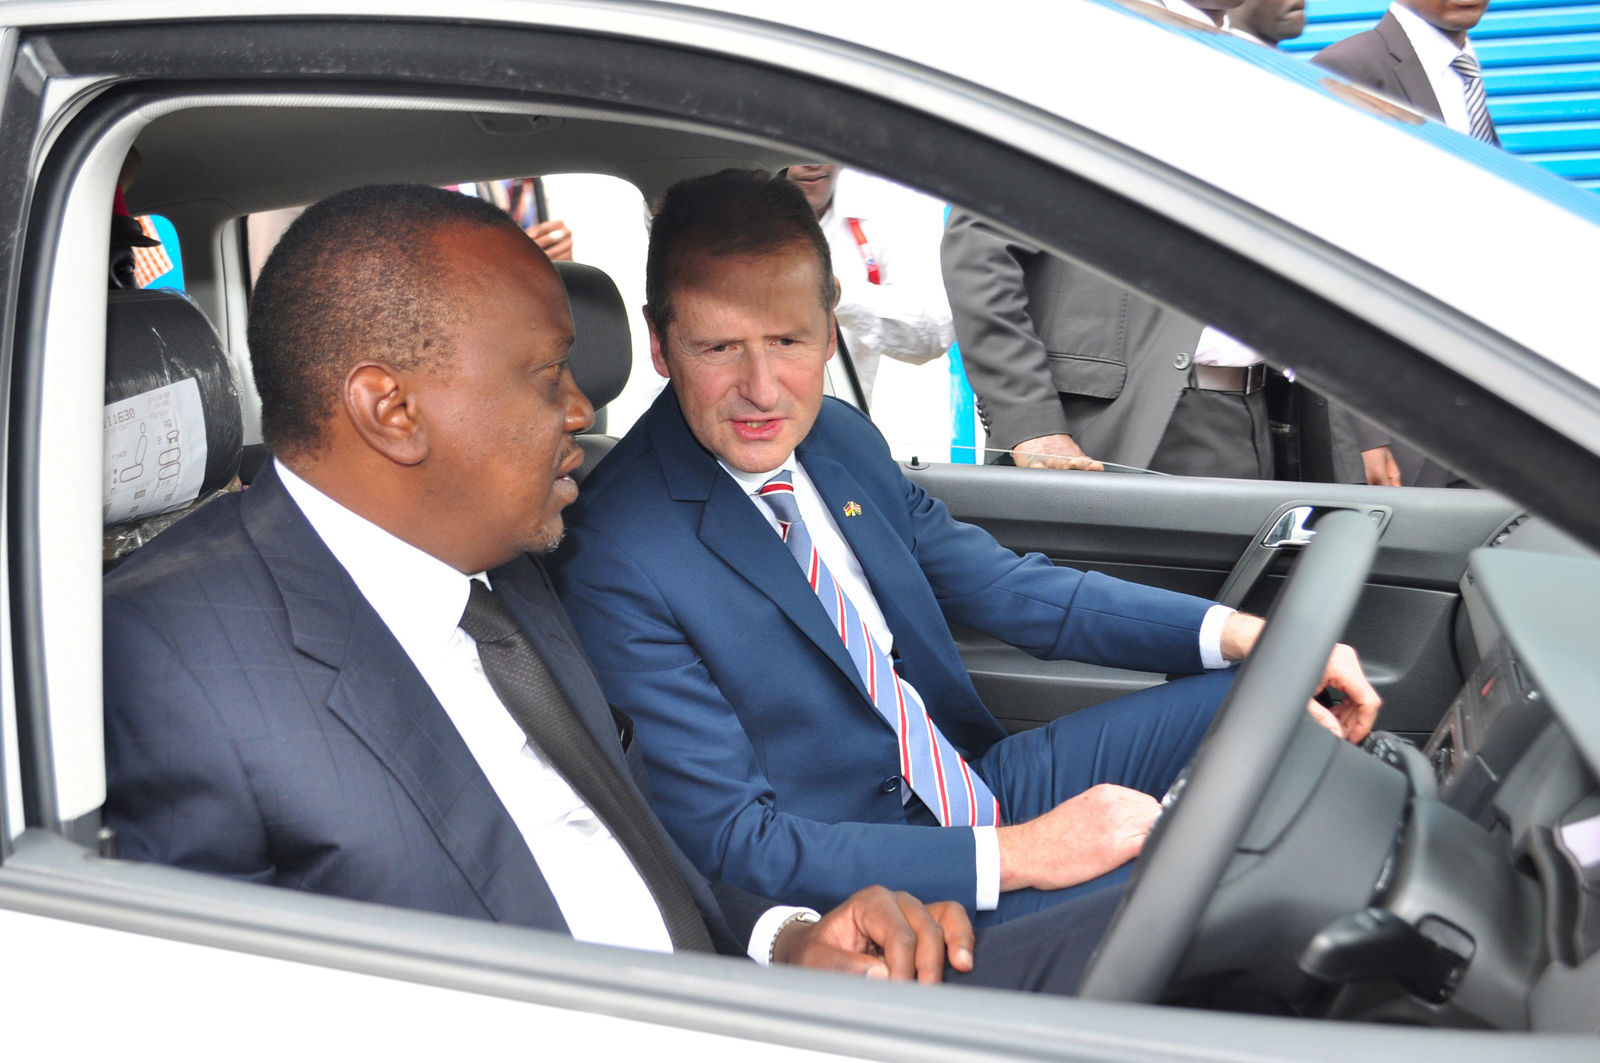 Erschließung neuer Marktpotentiale: Volkswagen eröffnet Fahrzeugfertigung in Kenia  